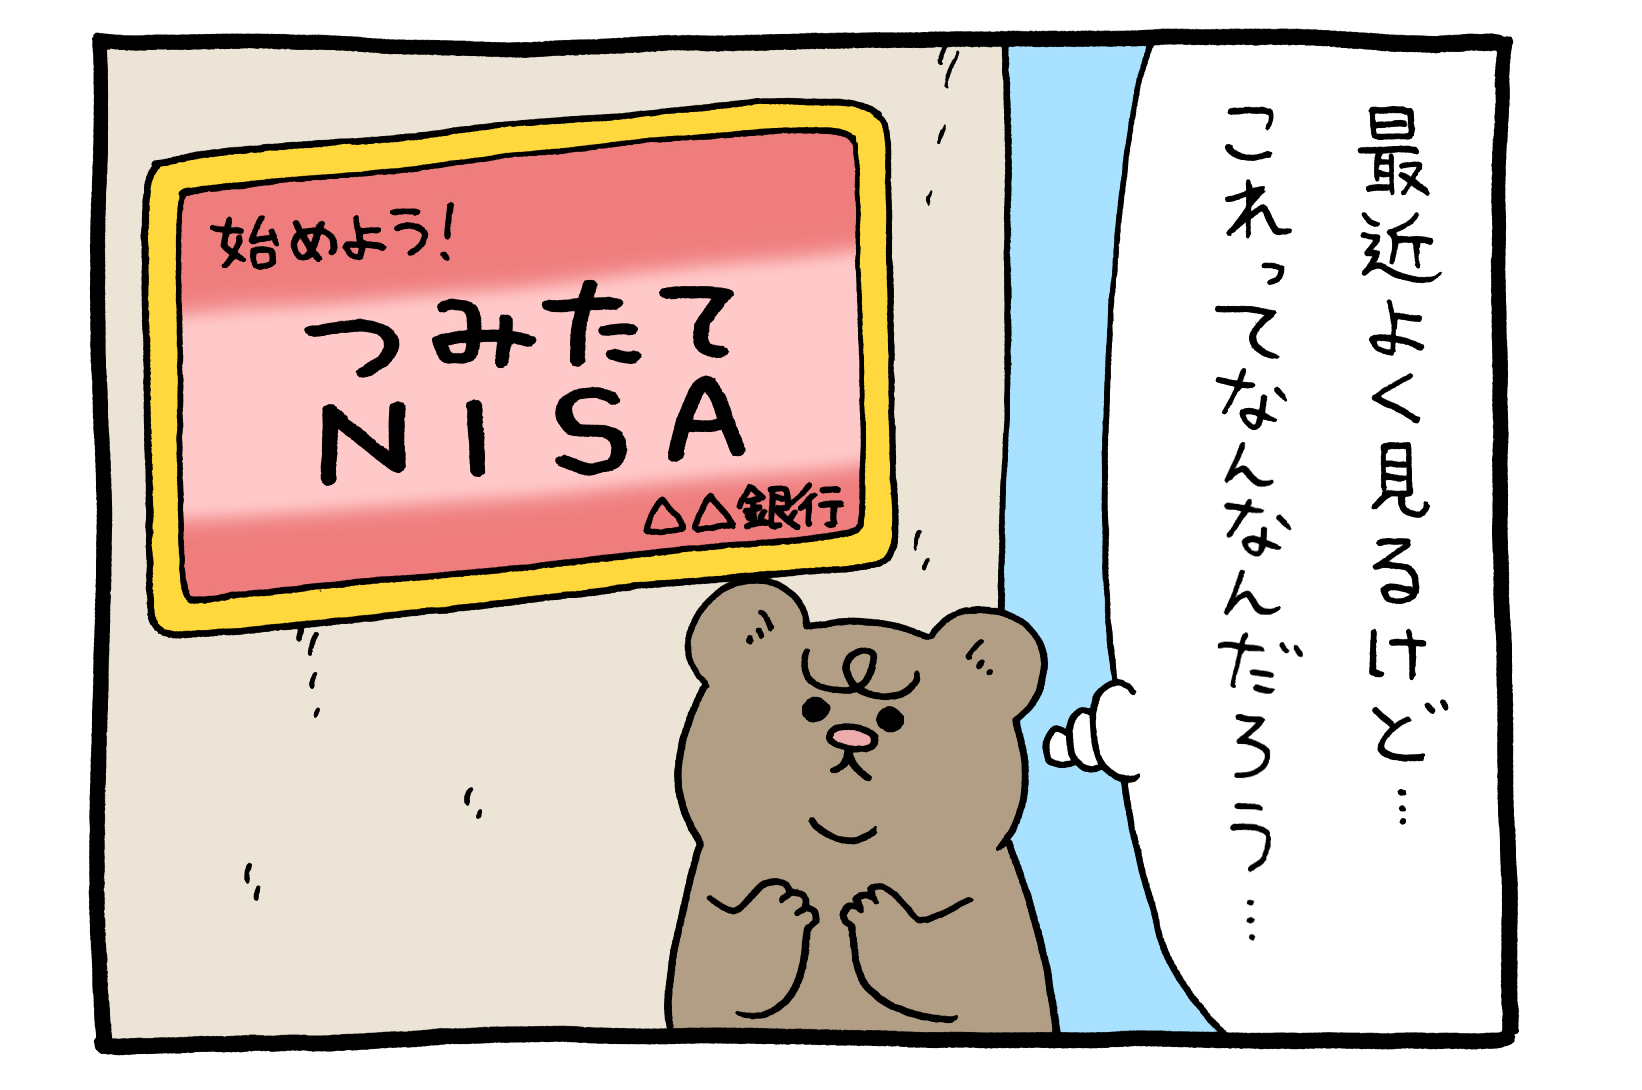 【4コマ漫画】悲熊「つみたて」